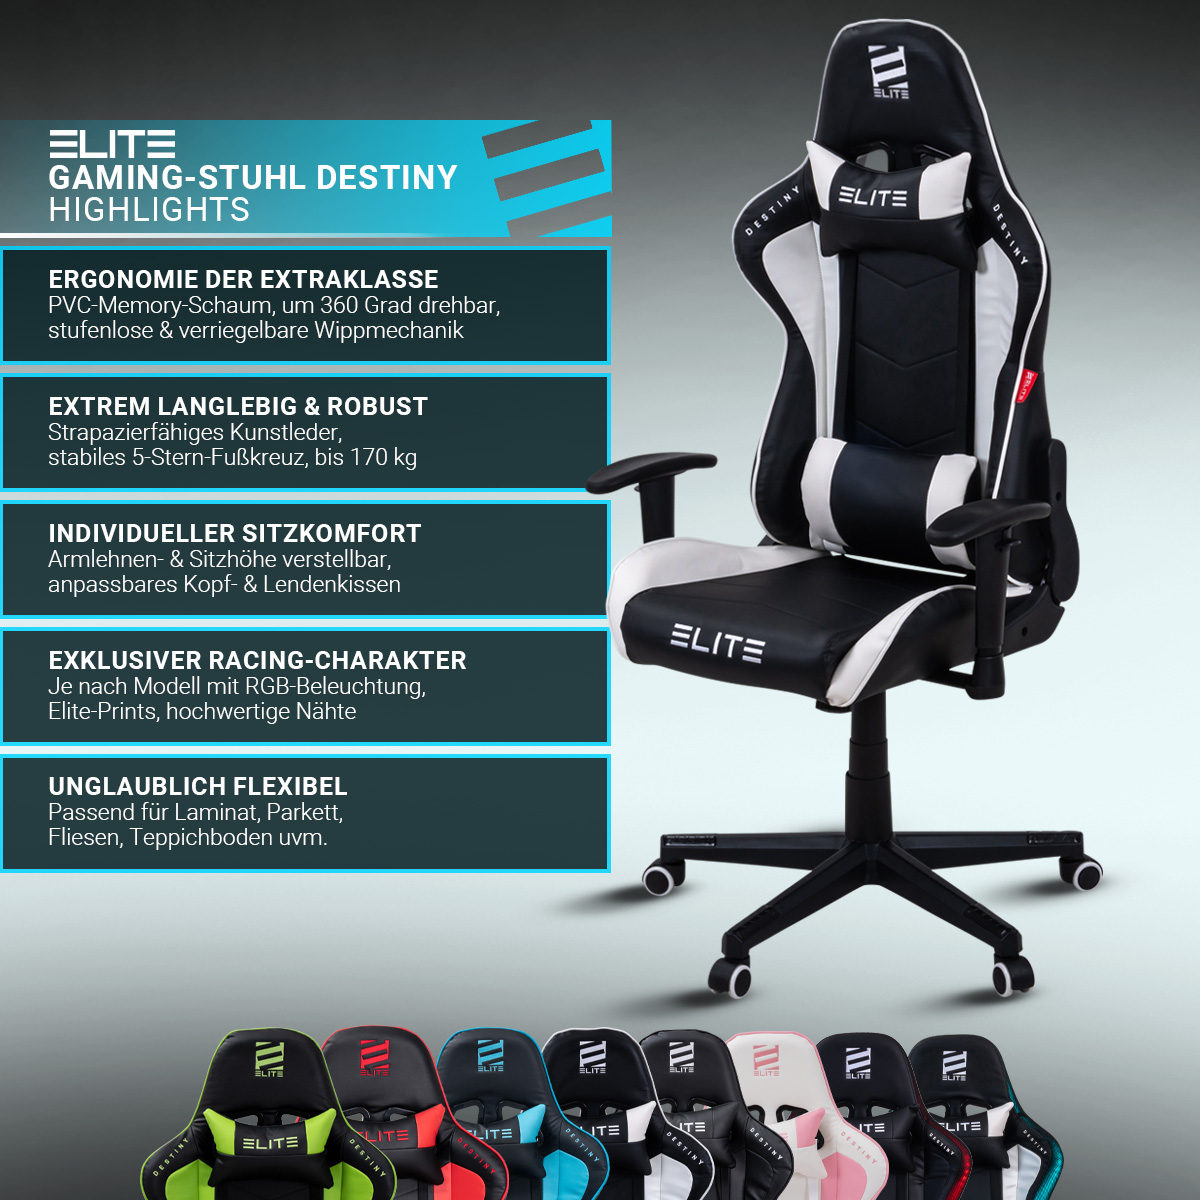 Elite Gaming-Stuhl Destiny MG200 ᐅ Gamer-Stuhl